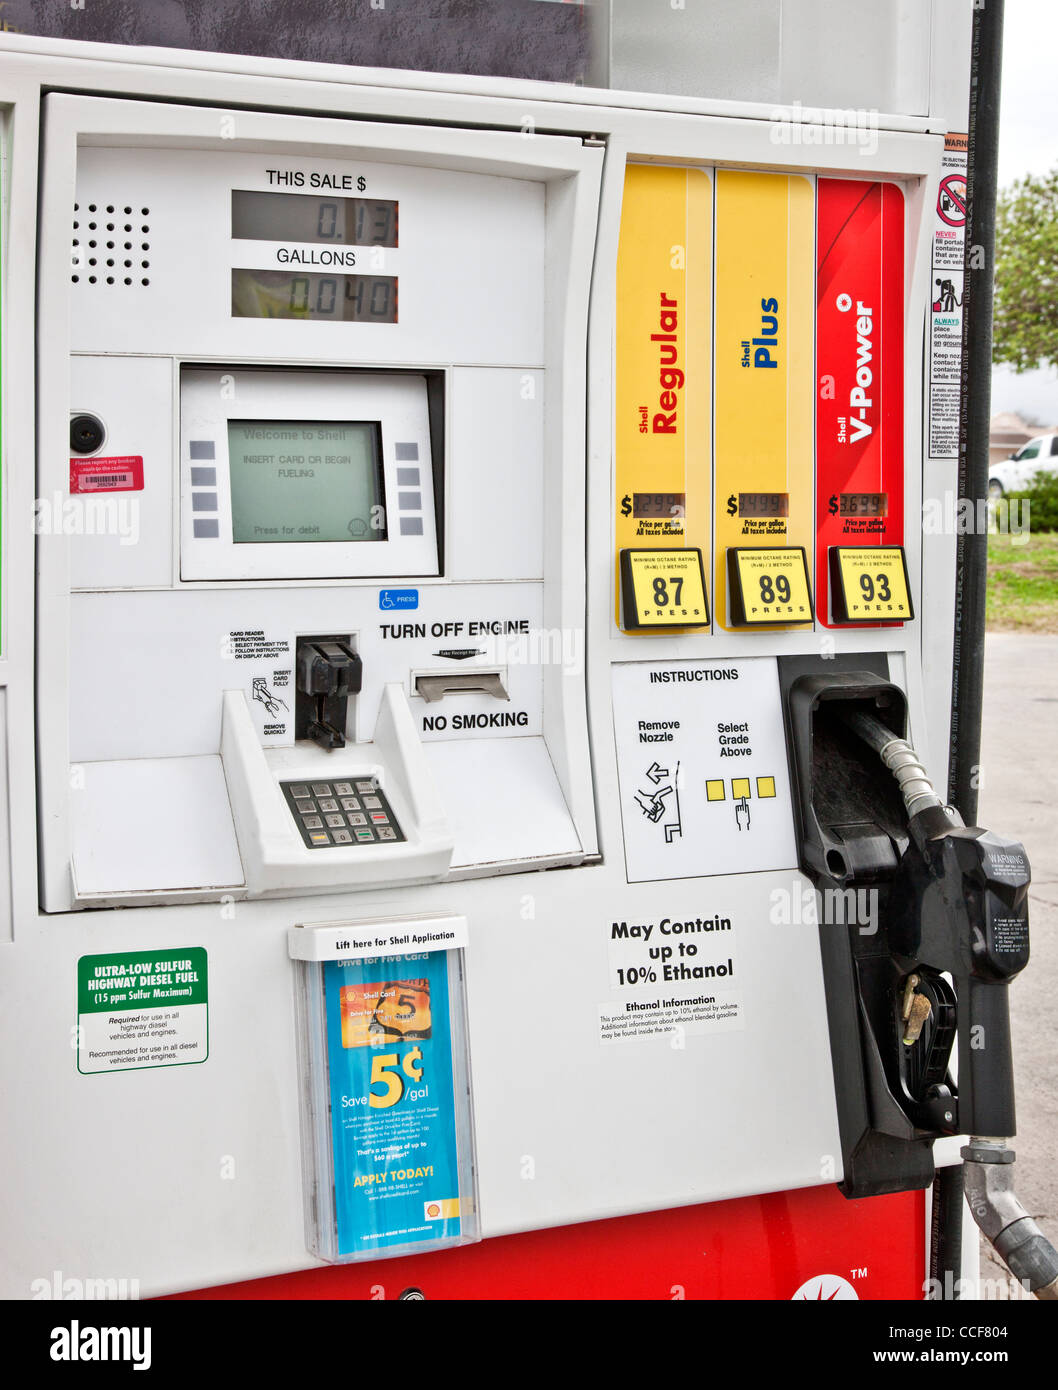 Pompe à carburant "peut contenir jusqu'à 10 % d'éthanol". Banque D'Images